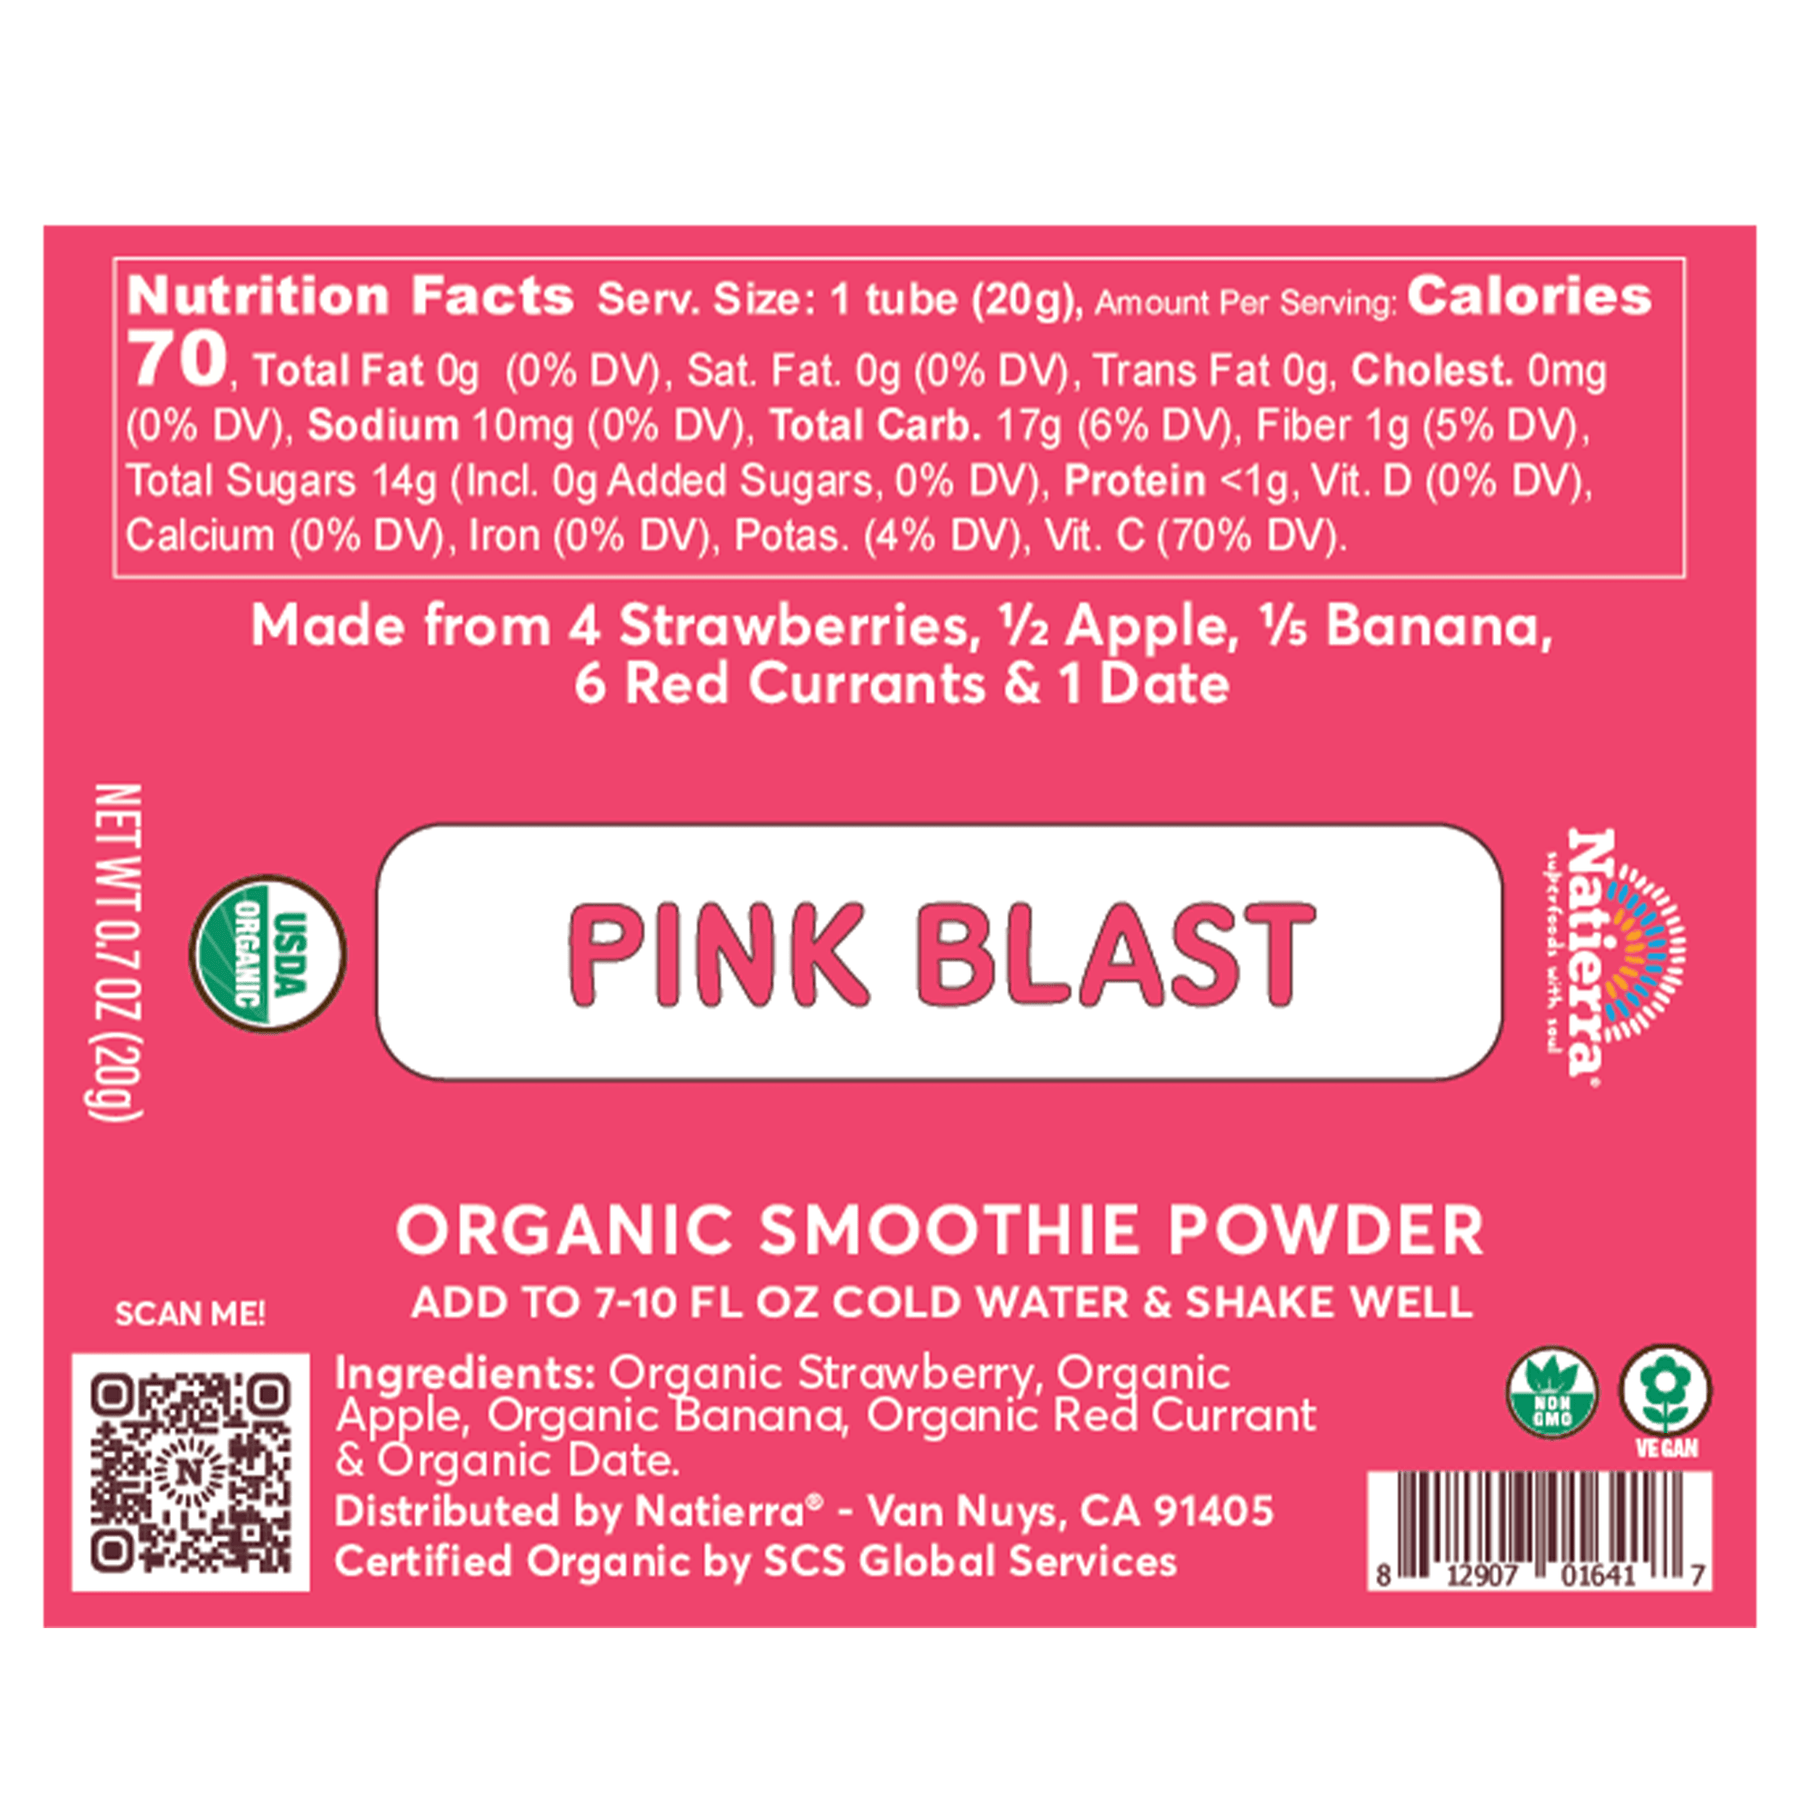 Natierra Pink Blast Smoothie Powder nutrition facts